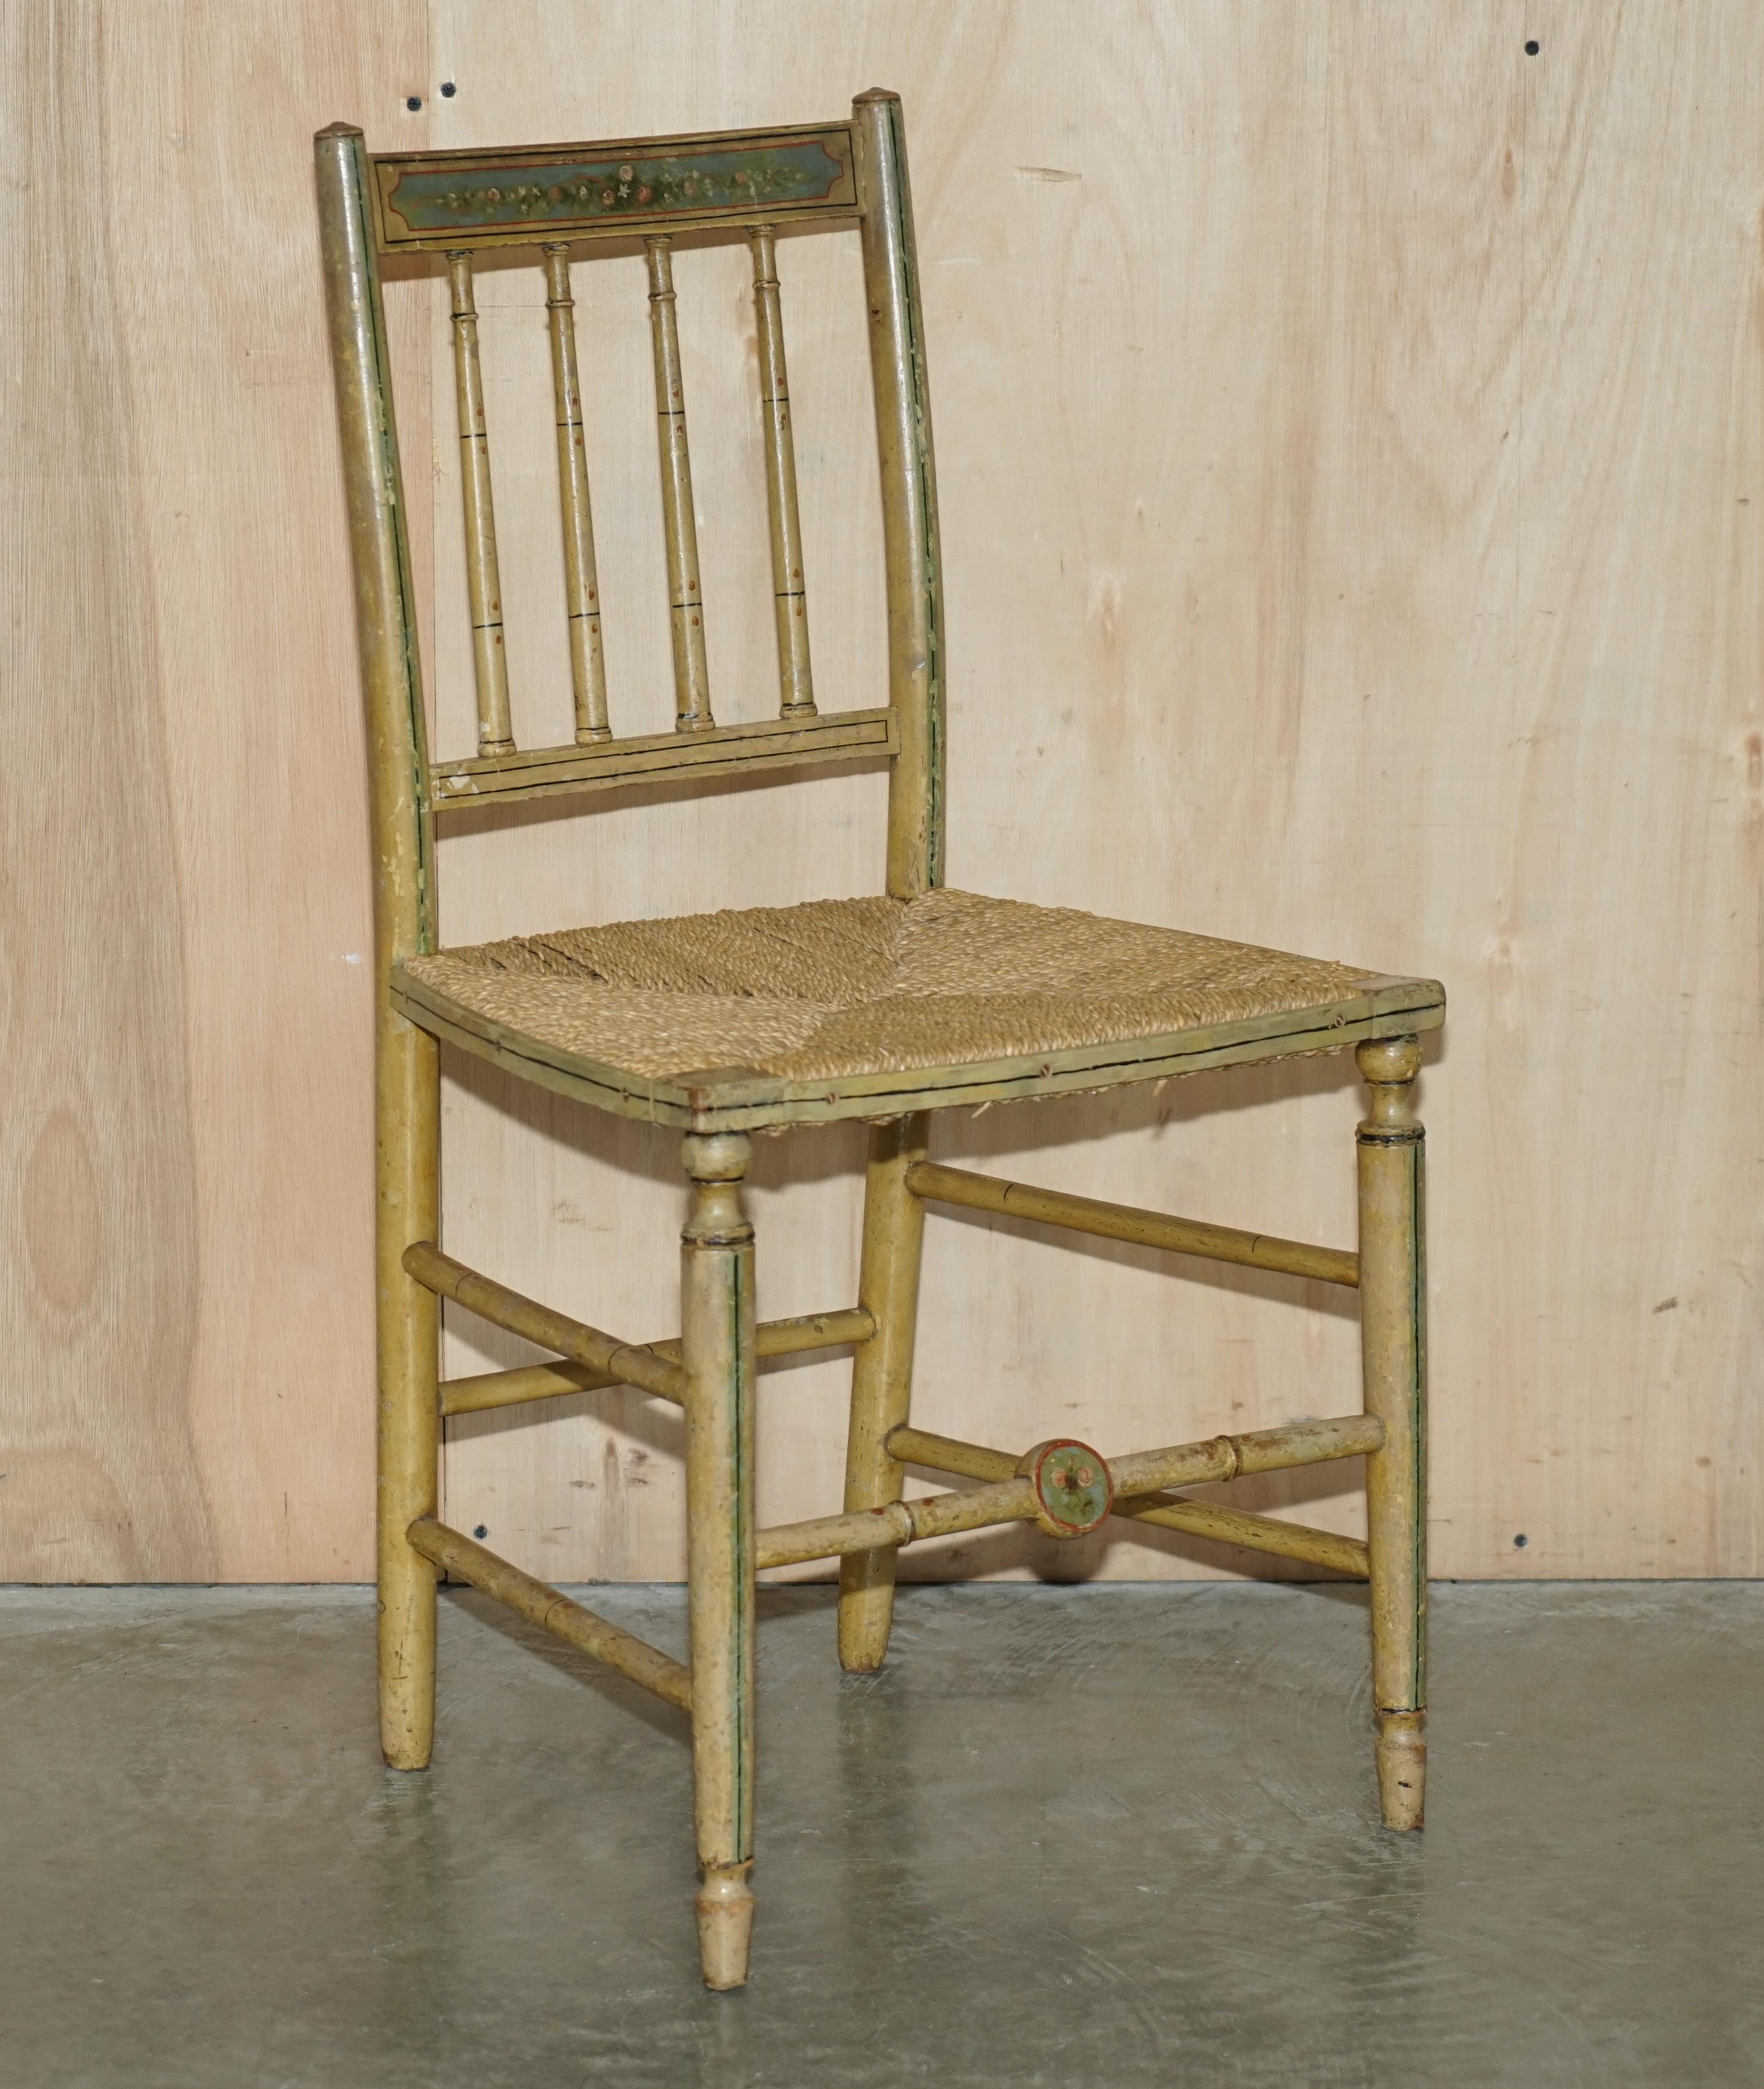 Royal House Antiques

Royal House Antiques freut sich, dieses hübsche Paar originaler handbemalter Regency-Stühle (ca. 1810-1820) mit geflochtenen Sitzen aus der Zeit zum Verkauf anbieten zu können. 

Bitte beachten Sie die Liefergebühr aufgeführt